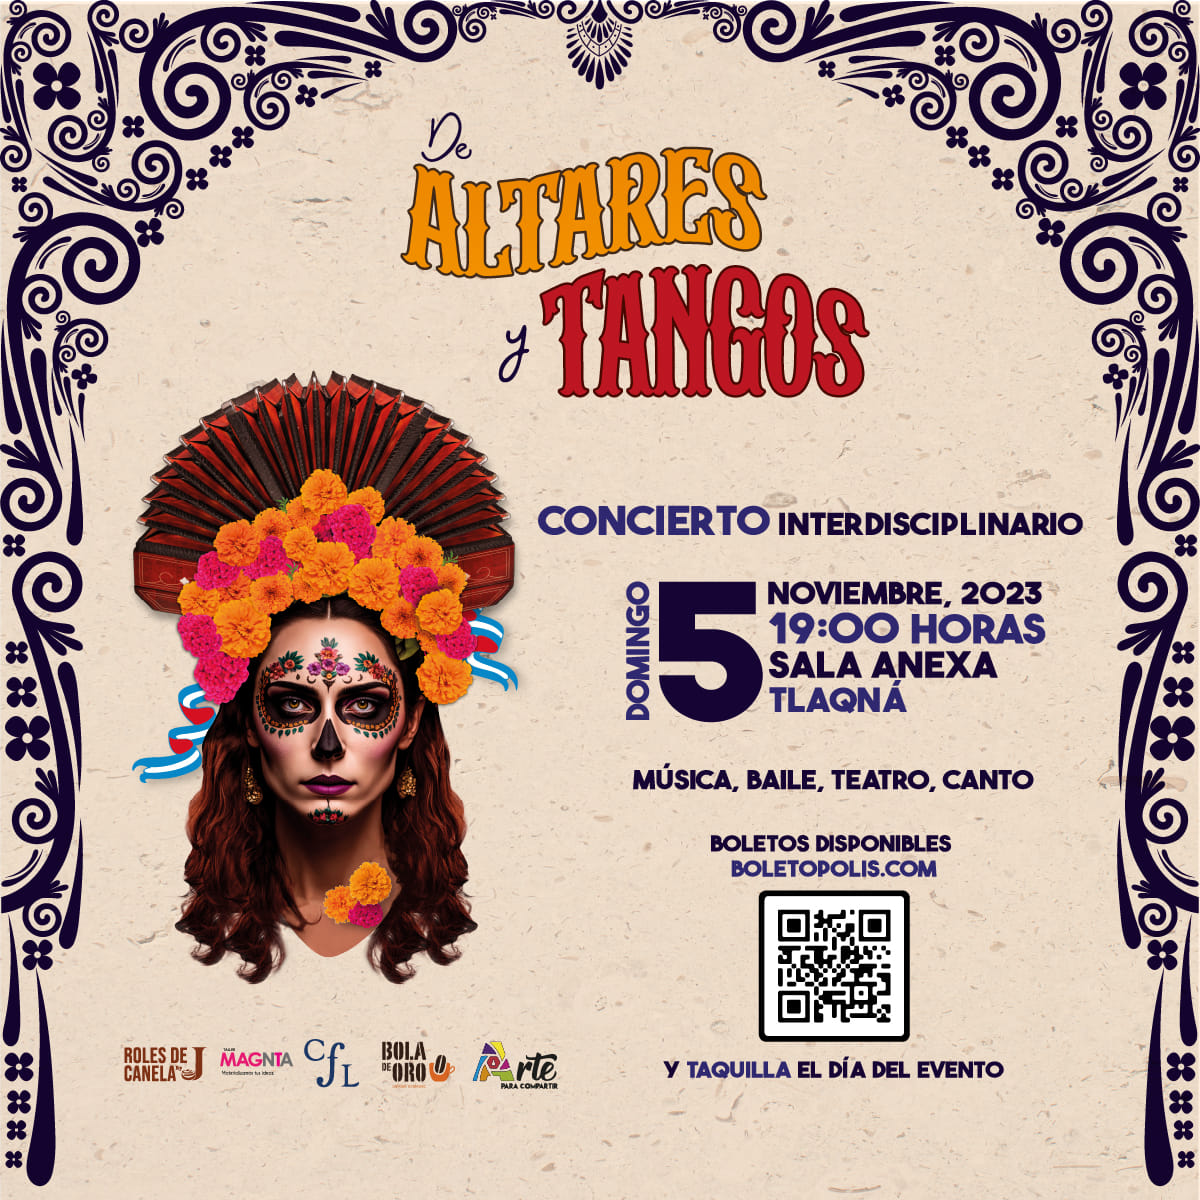 Invitan al concierto interdisciplinario De Altares y Tangos